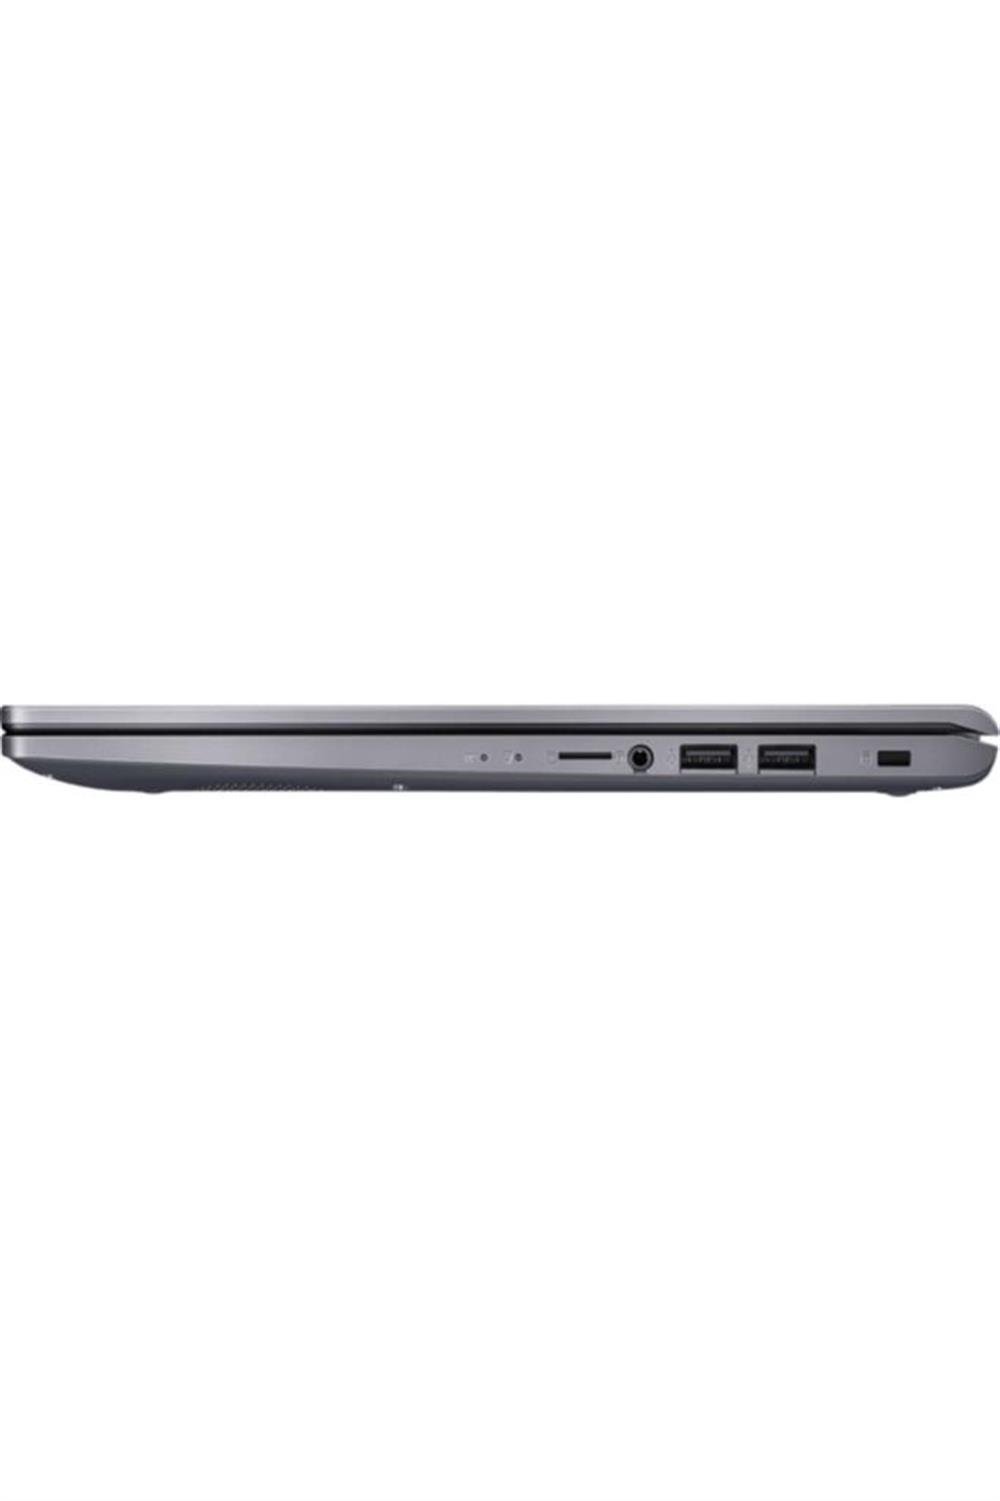 ASUS X515fa-ej053t/ I5-10210u/ 8gb Ram/ 256gb Ssd/ 15.6" Fhd/ Windows 10  Home Laptop Gri